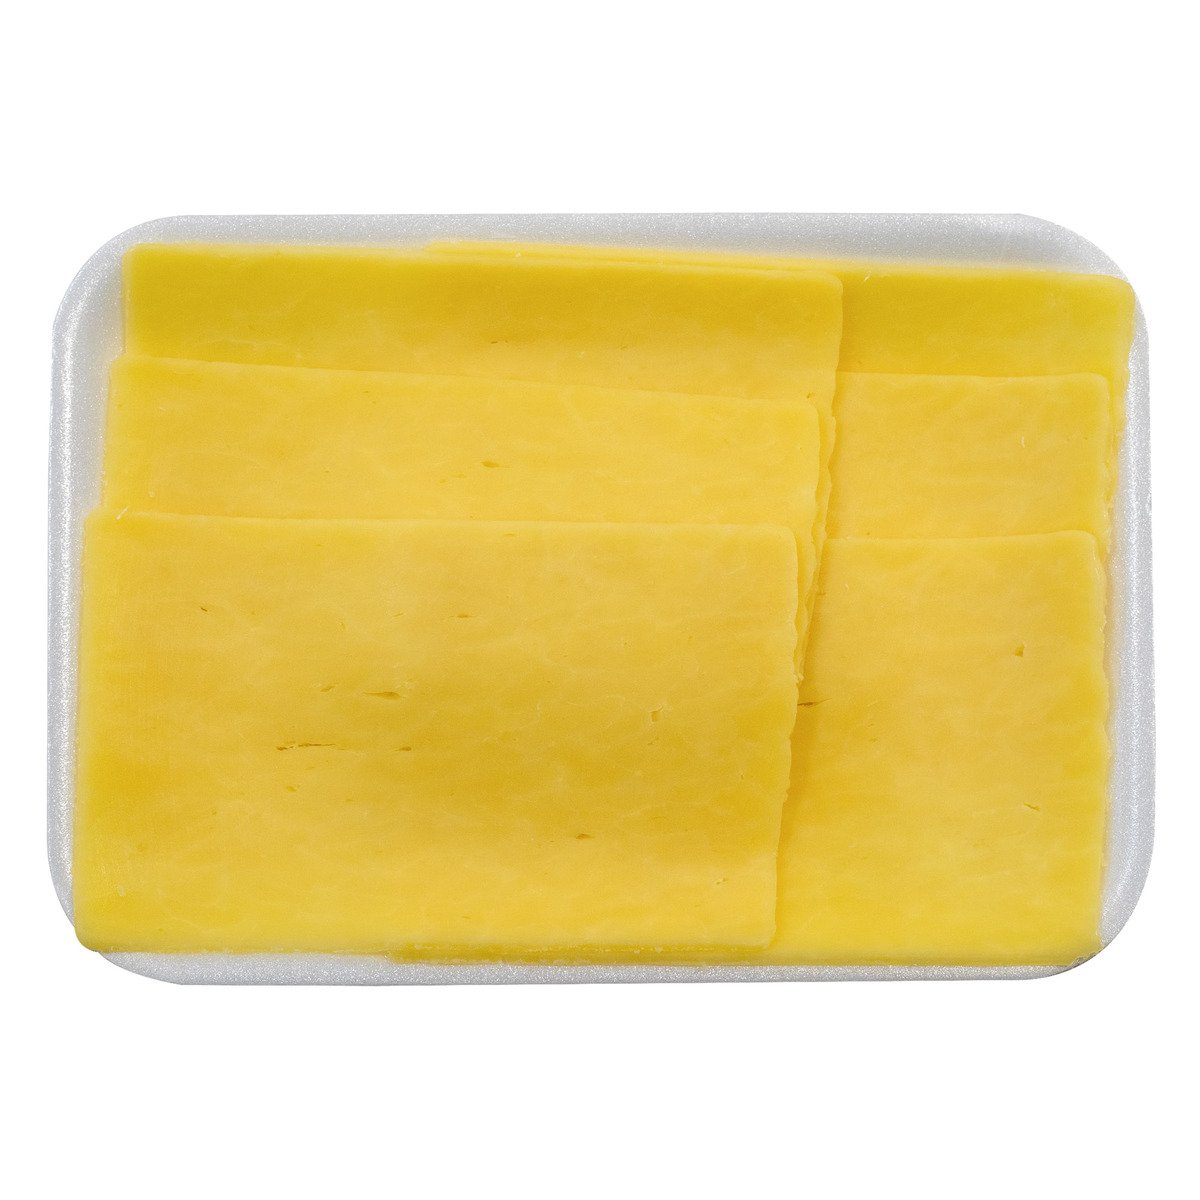 اشتري قم بشراء جبنة شيدر بيضاء ايرلندية 250 جم Online at Best Price من الموقع - من لولو هايبر ماركت English Cheese في السعودية